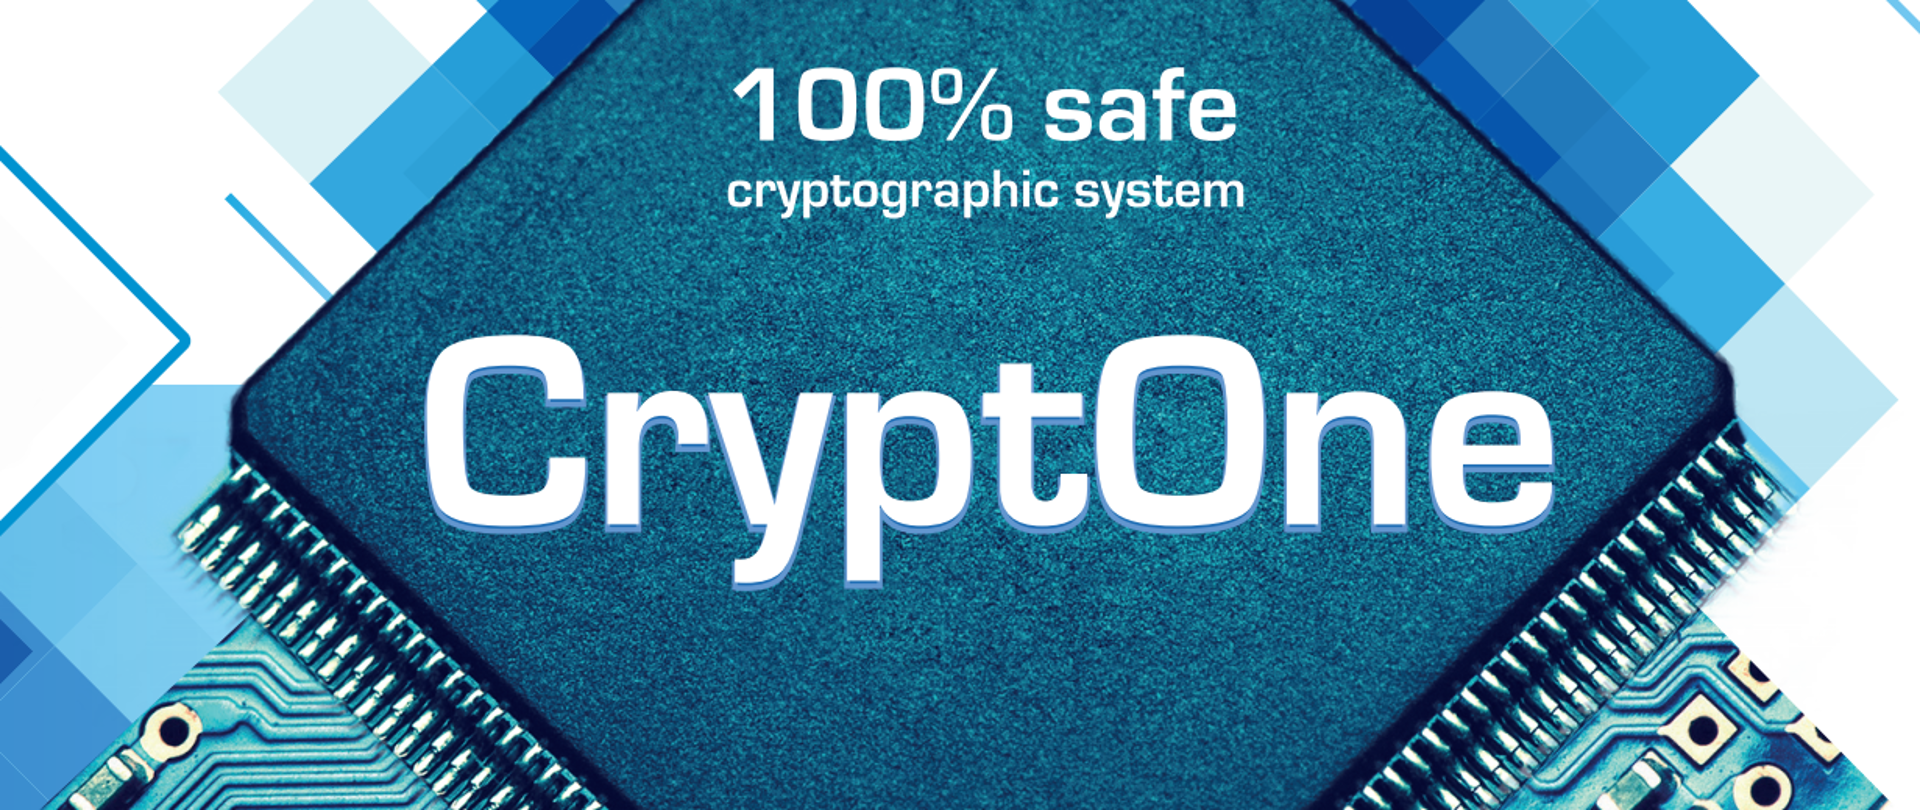 Zdjęcie procesora komputerowego z napisem 100% safe CryptOne